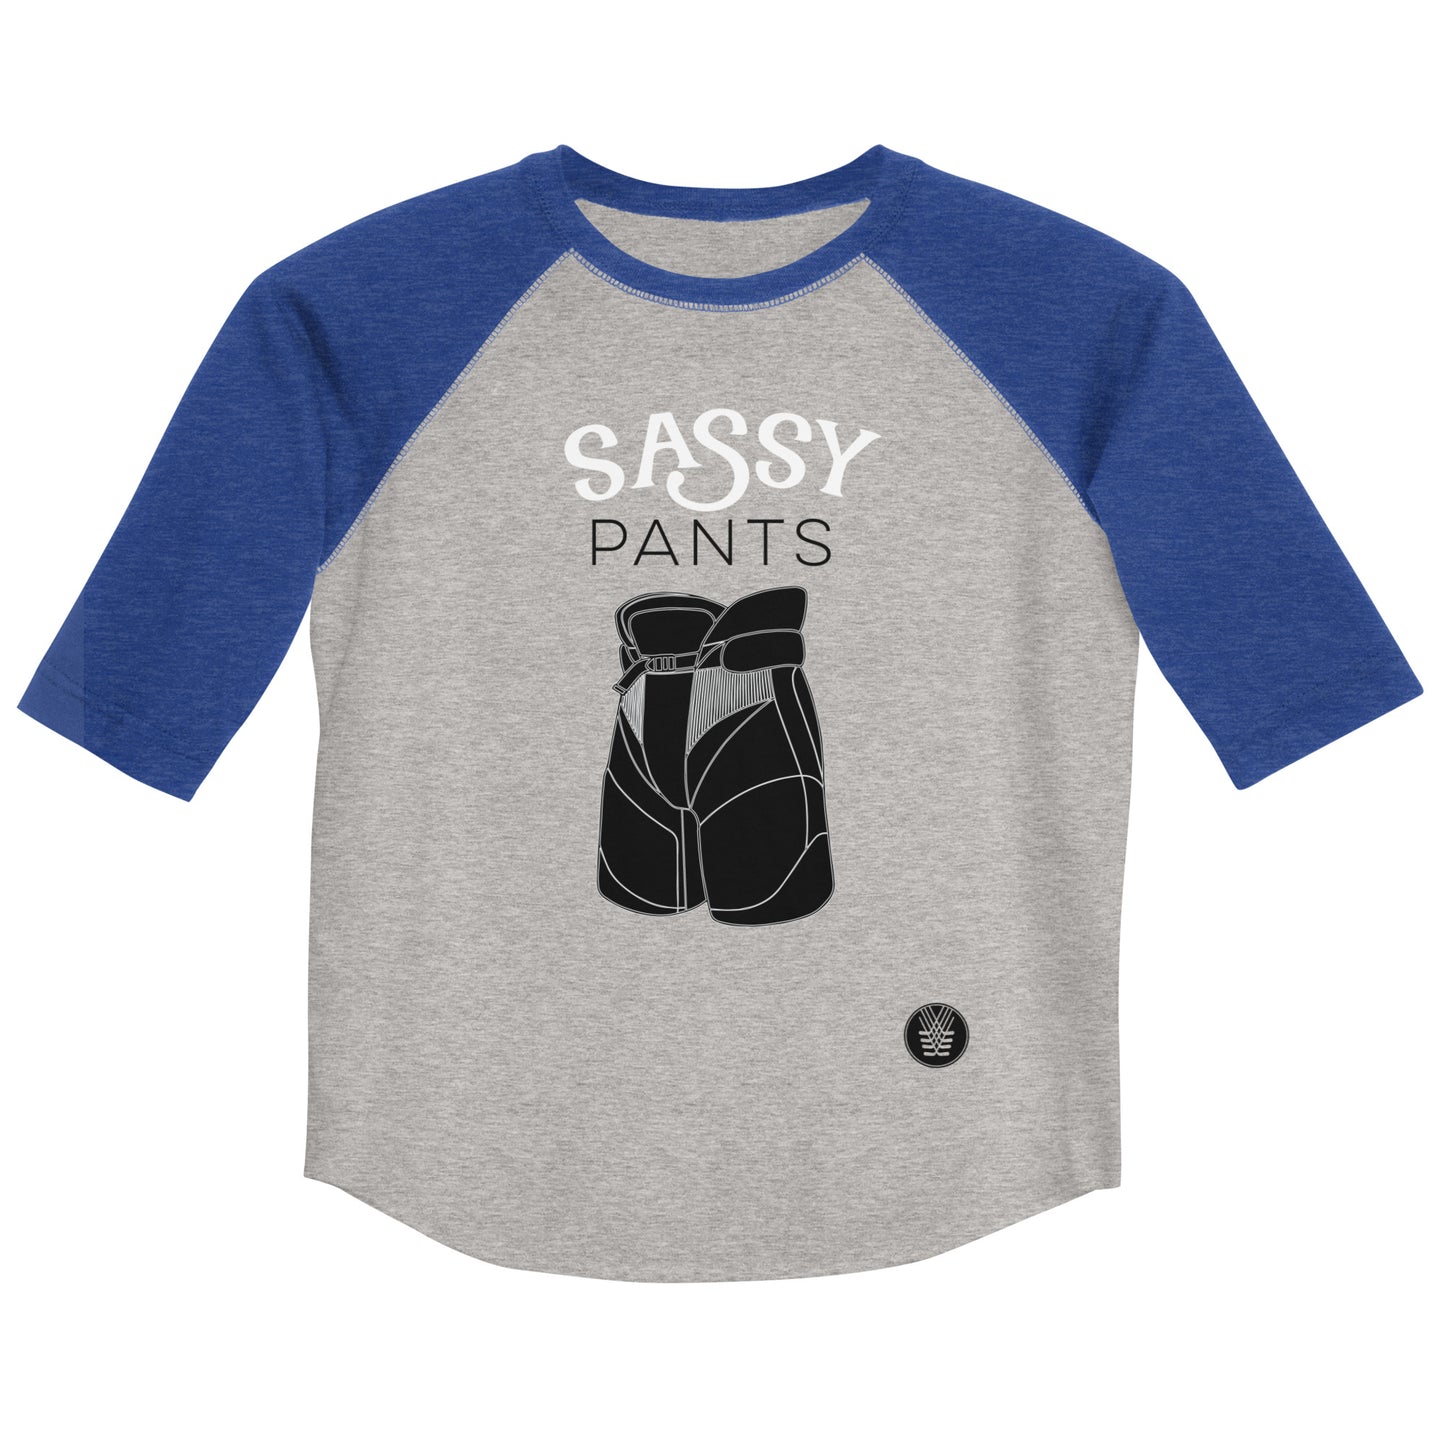 Sassy Pants (kiddos)